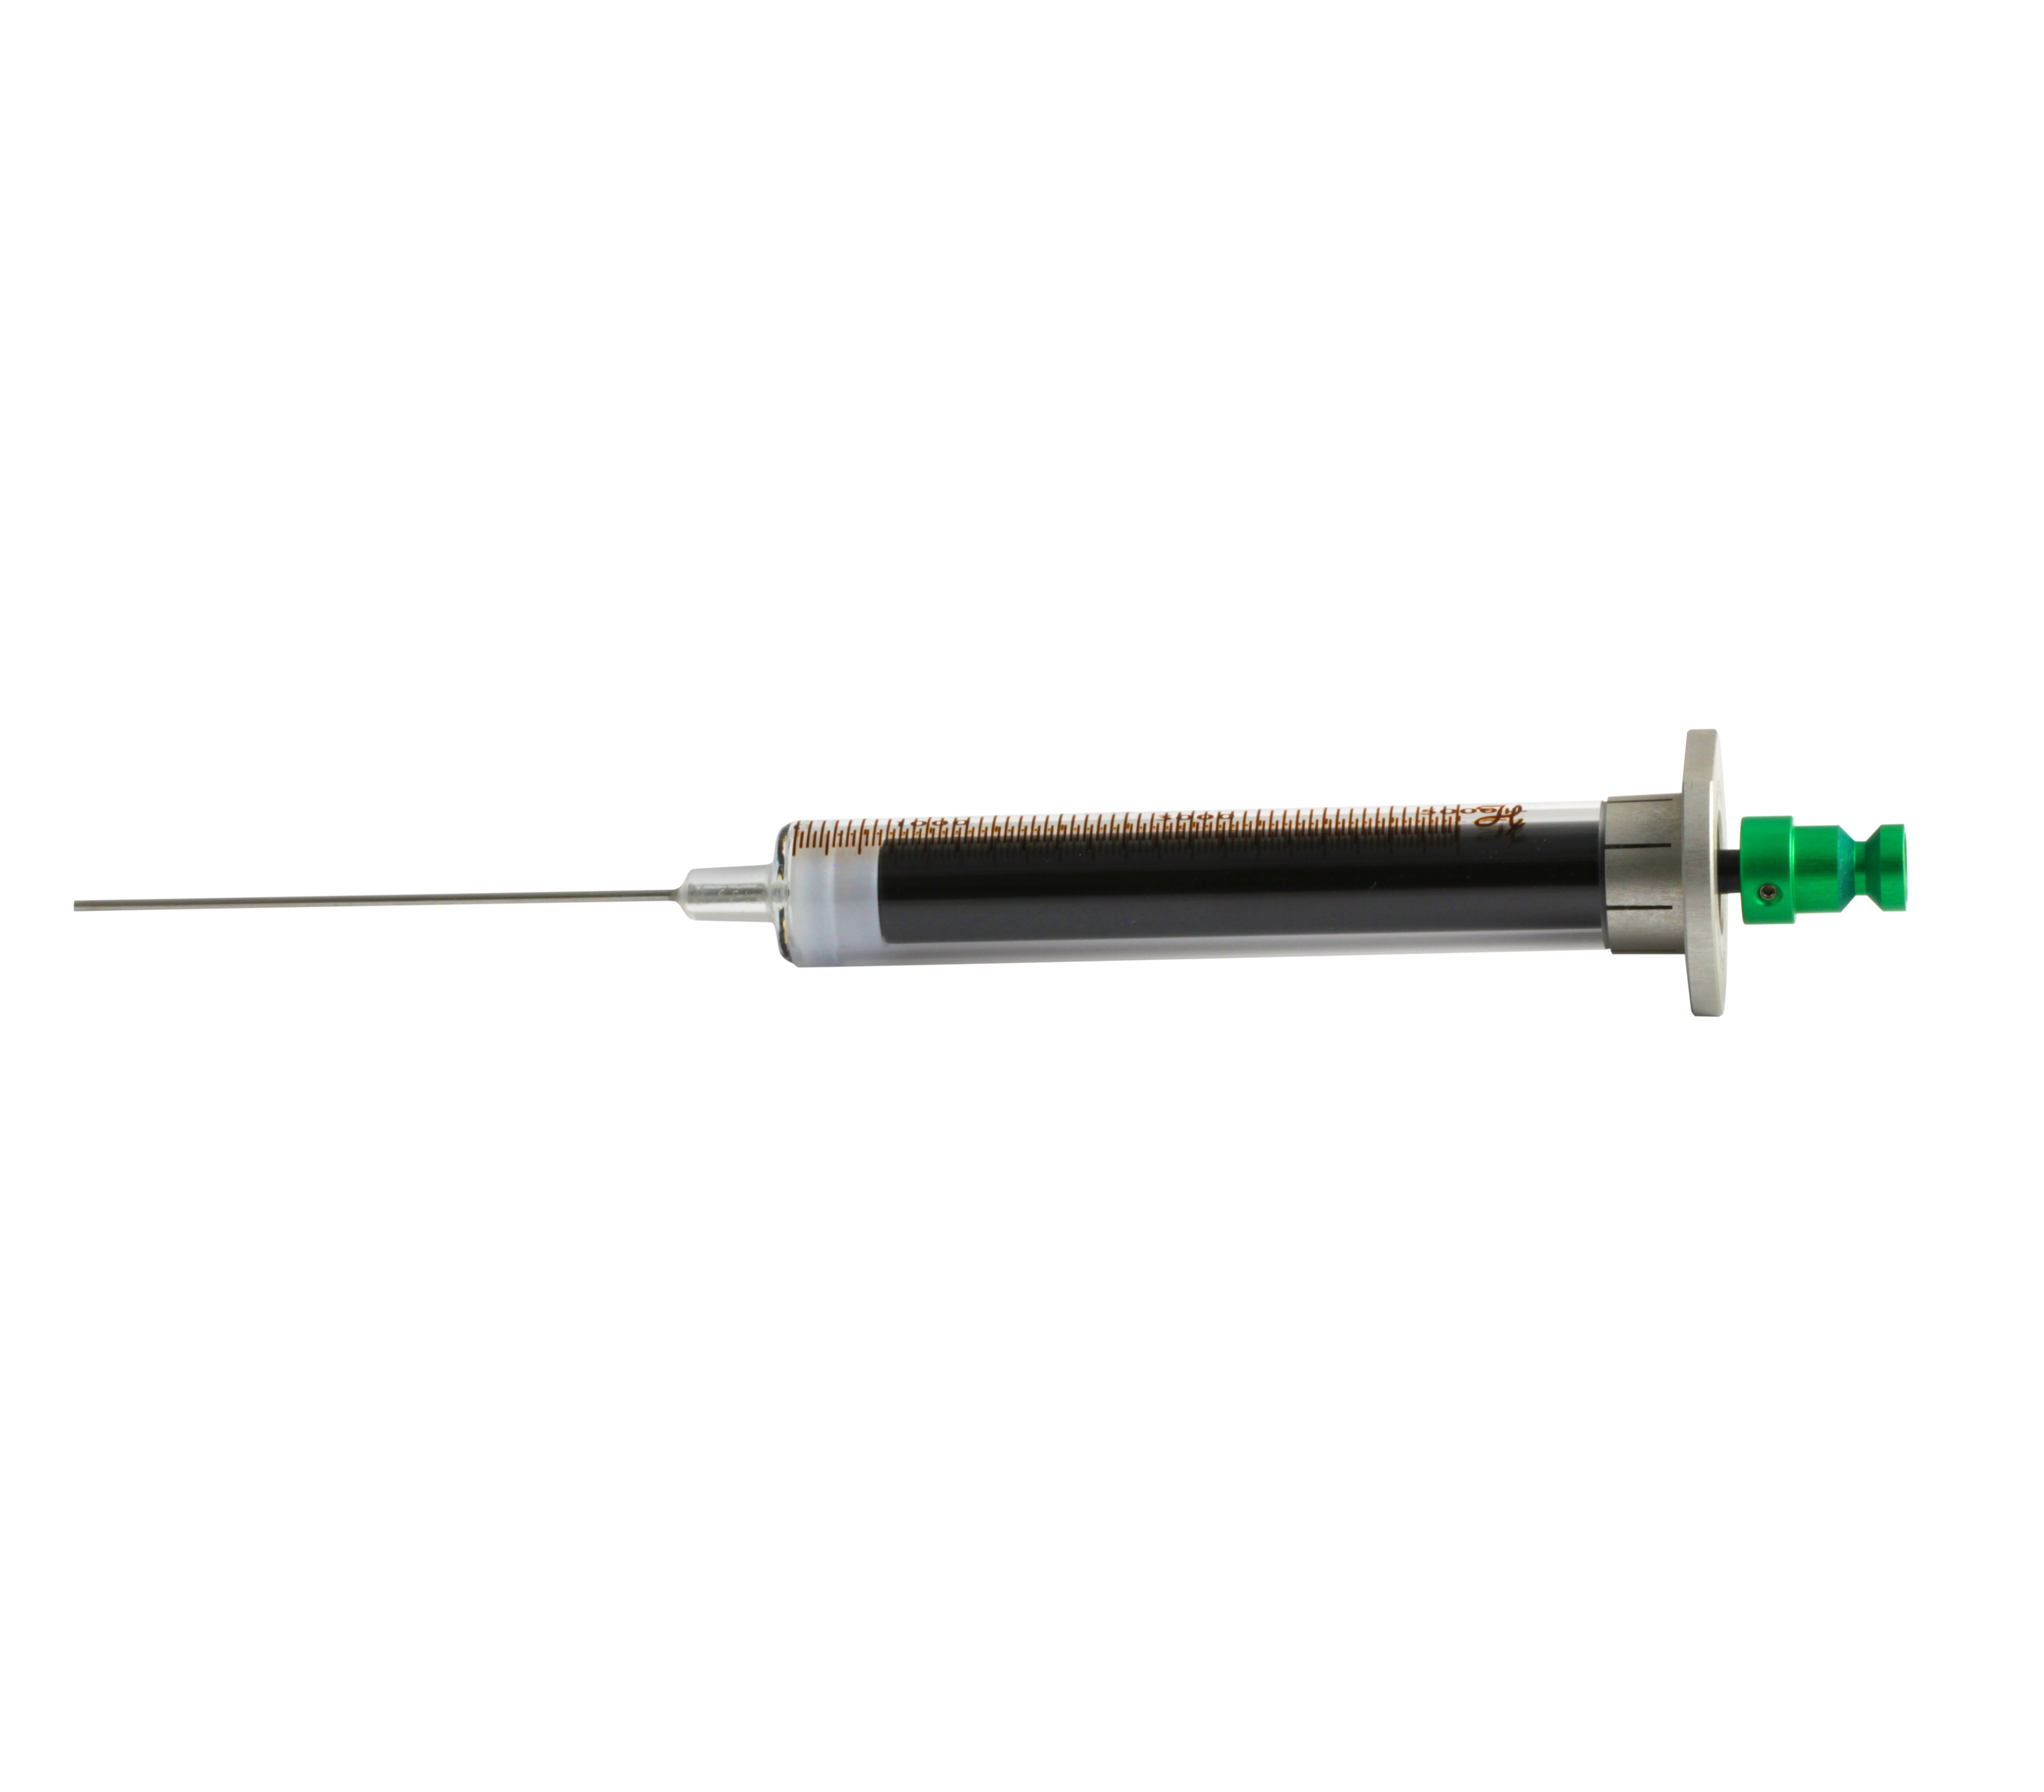 Liquid syringe Image